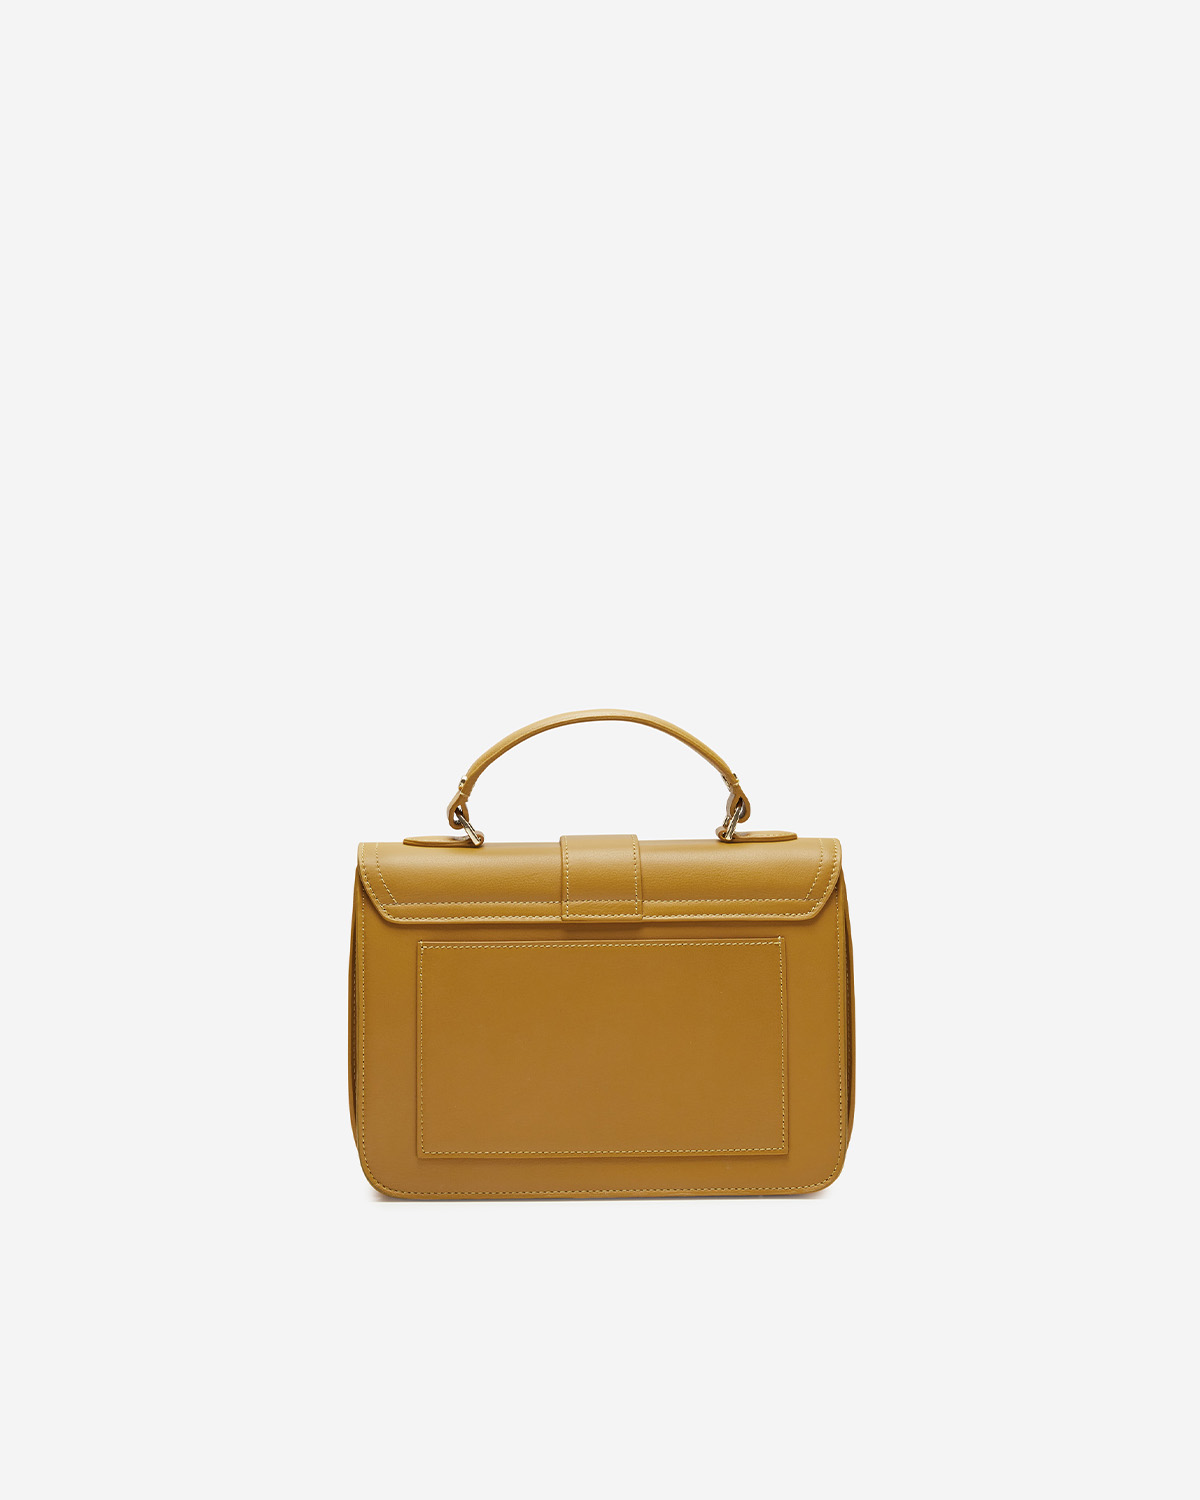 กระเป๋าถือหนังแท้ VERA Alexa Leather Handbag สี English Mustard